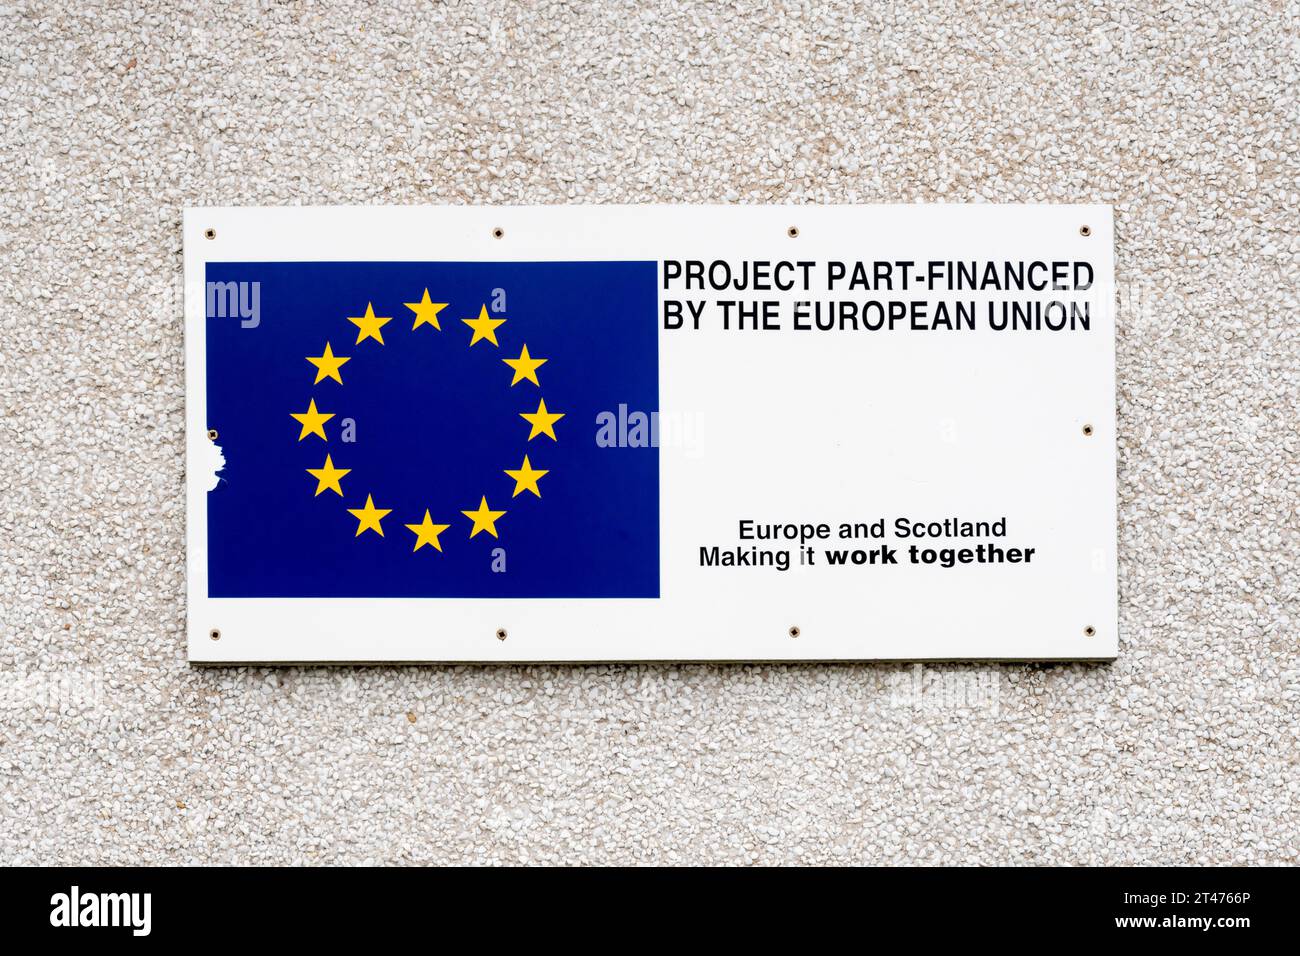 Projekt zum Lesen von Dankesschildern, das von der EU, Europa und Schottland kofinanziert wird und so gemeinsam am Fetlar Pier in Shetland arbeitet. Stockfoto